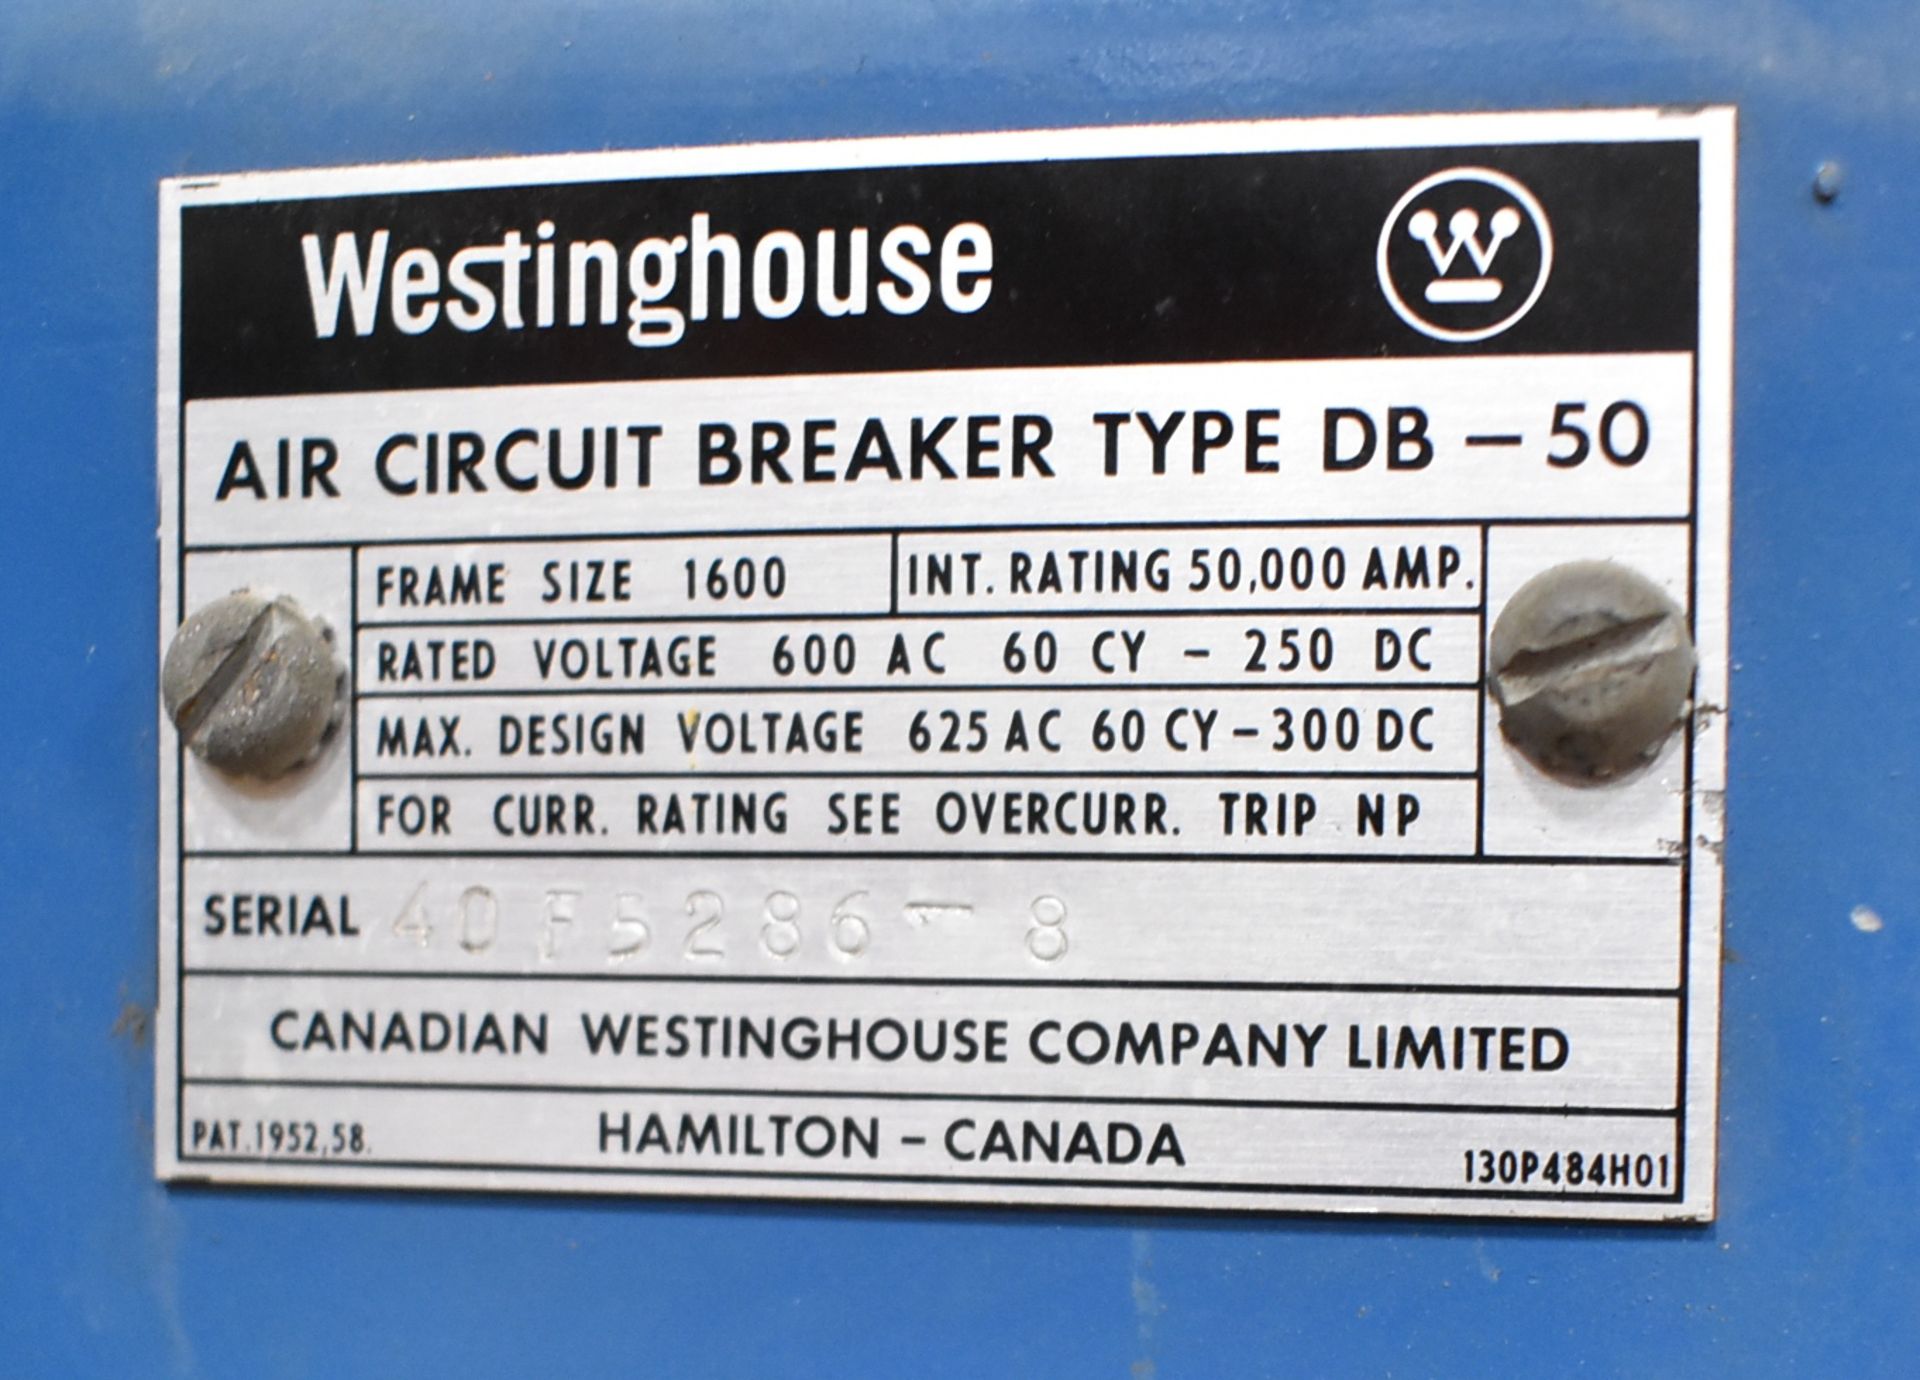 WESTINGHOUSE DB-50 AIR CIRCUIT BREAKER, S/N: 4DF5286-8 (CMD WAREHOUSE - 13070402) - Image 2 of 2